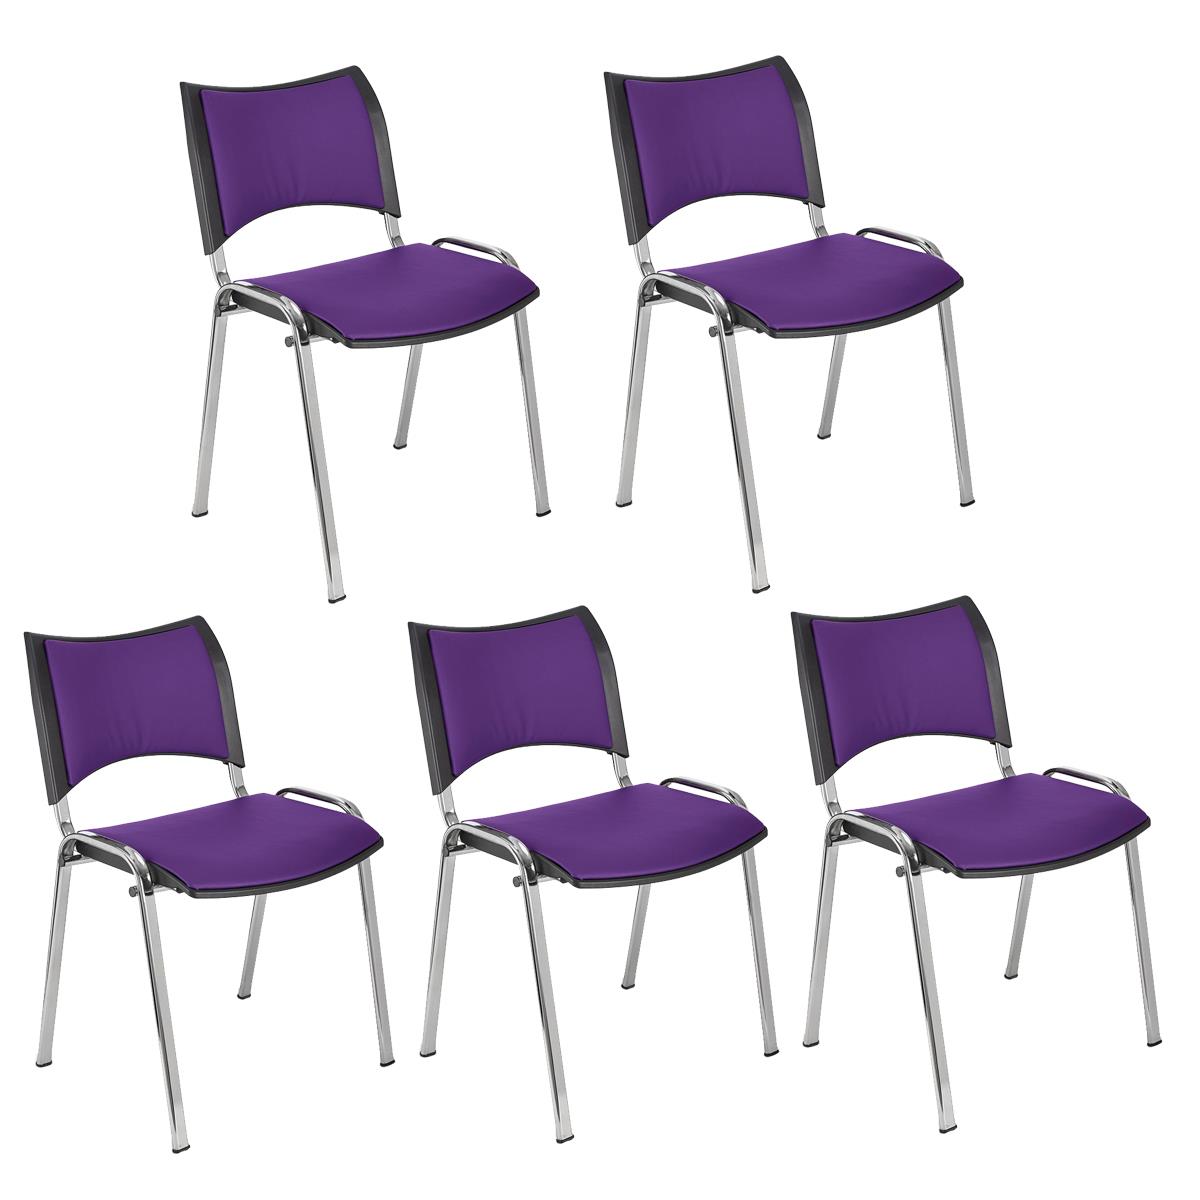 Lote 5 Cadeiras de Visita ROMEL PELE, Prática e Empilhável, Pernas Cromadas, Roxo